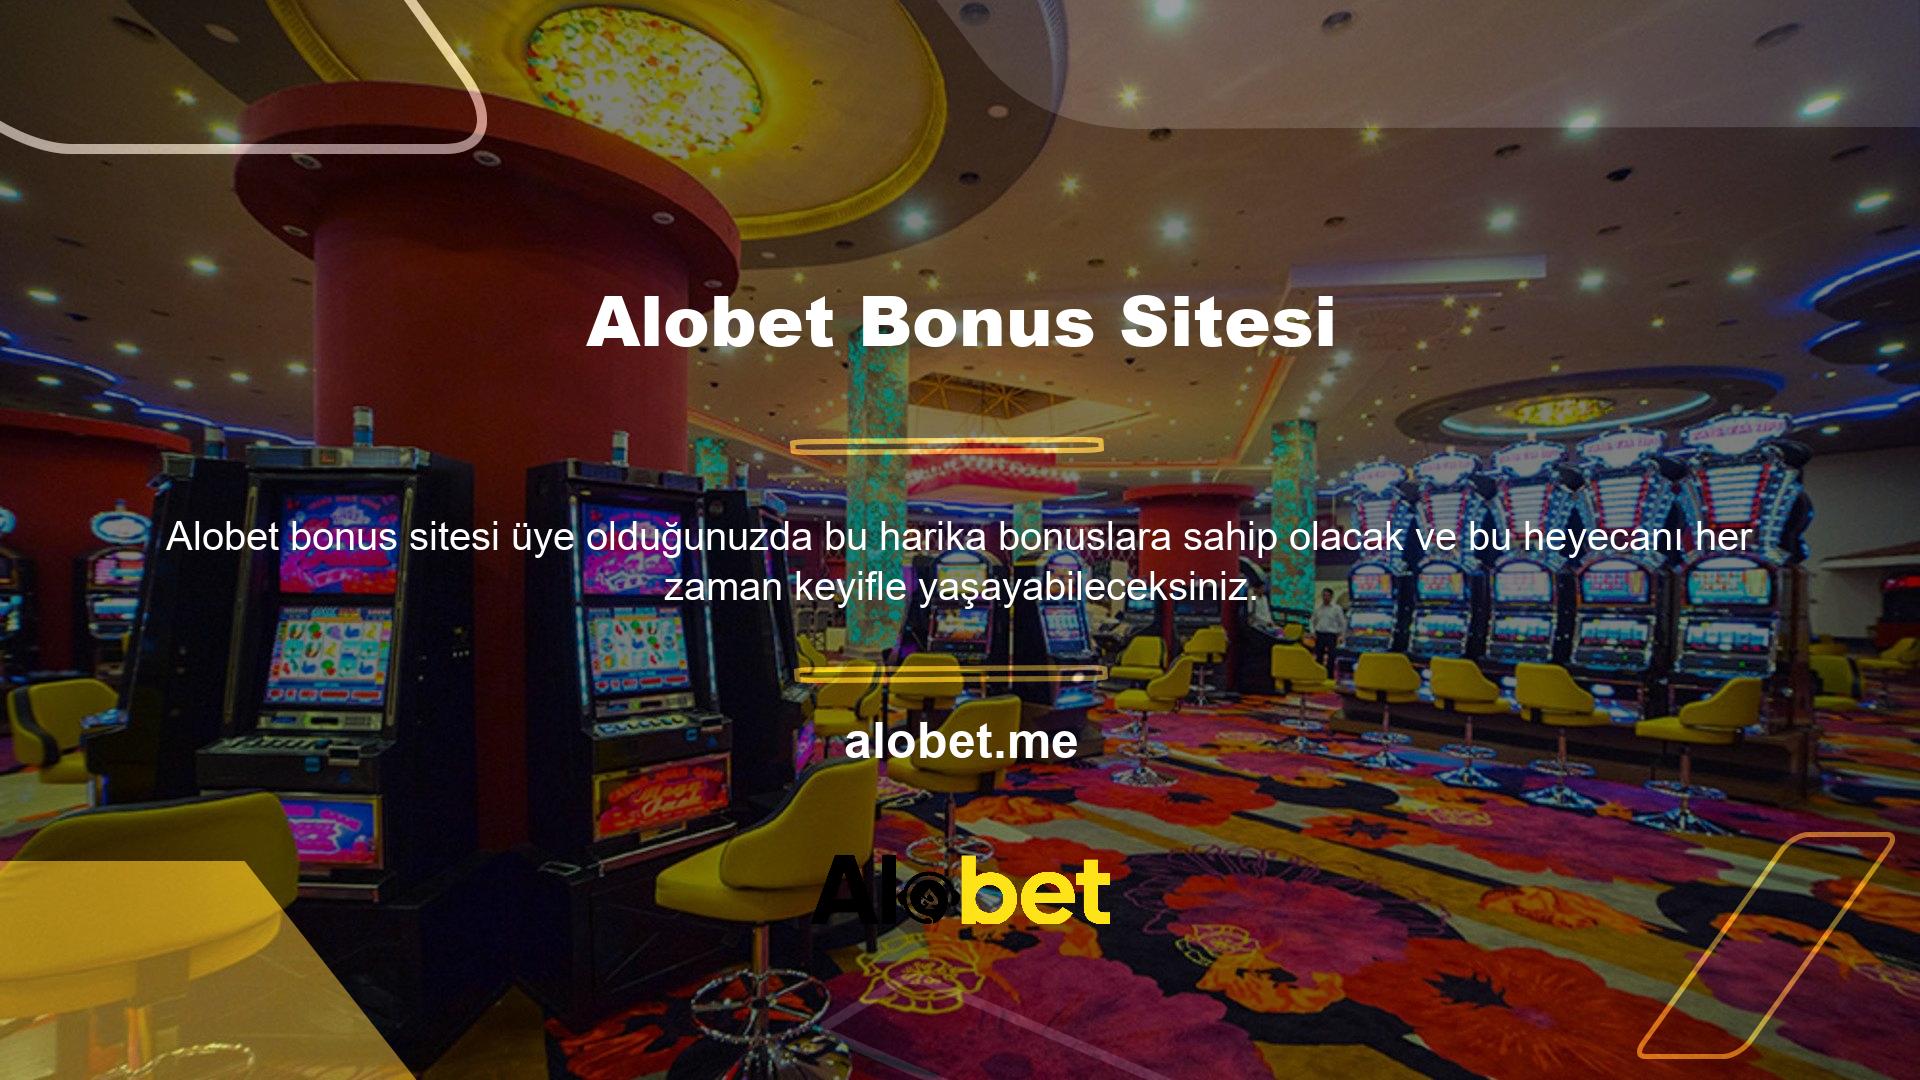 Alobet Bonus ile spor bahislerinden casino bahislerine kadar birçok ayrıcalığı en iyi şekilde elde edebilirsiniz